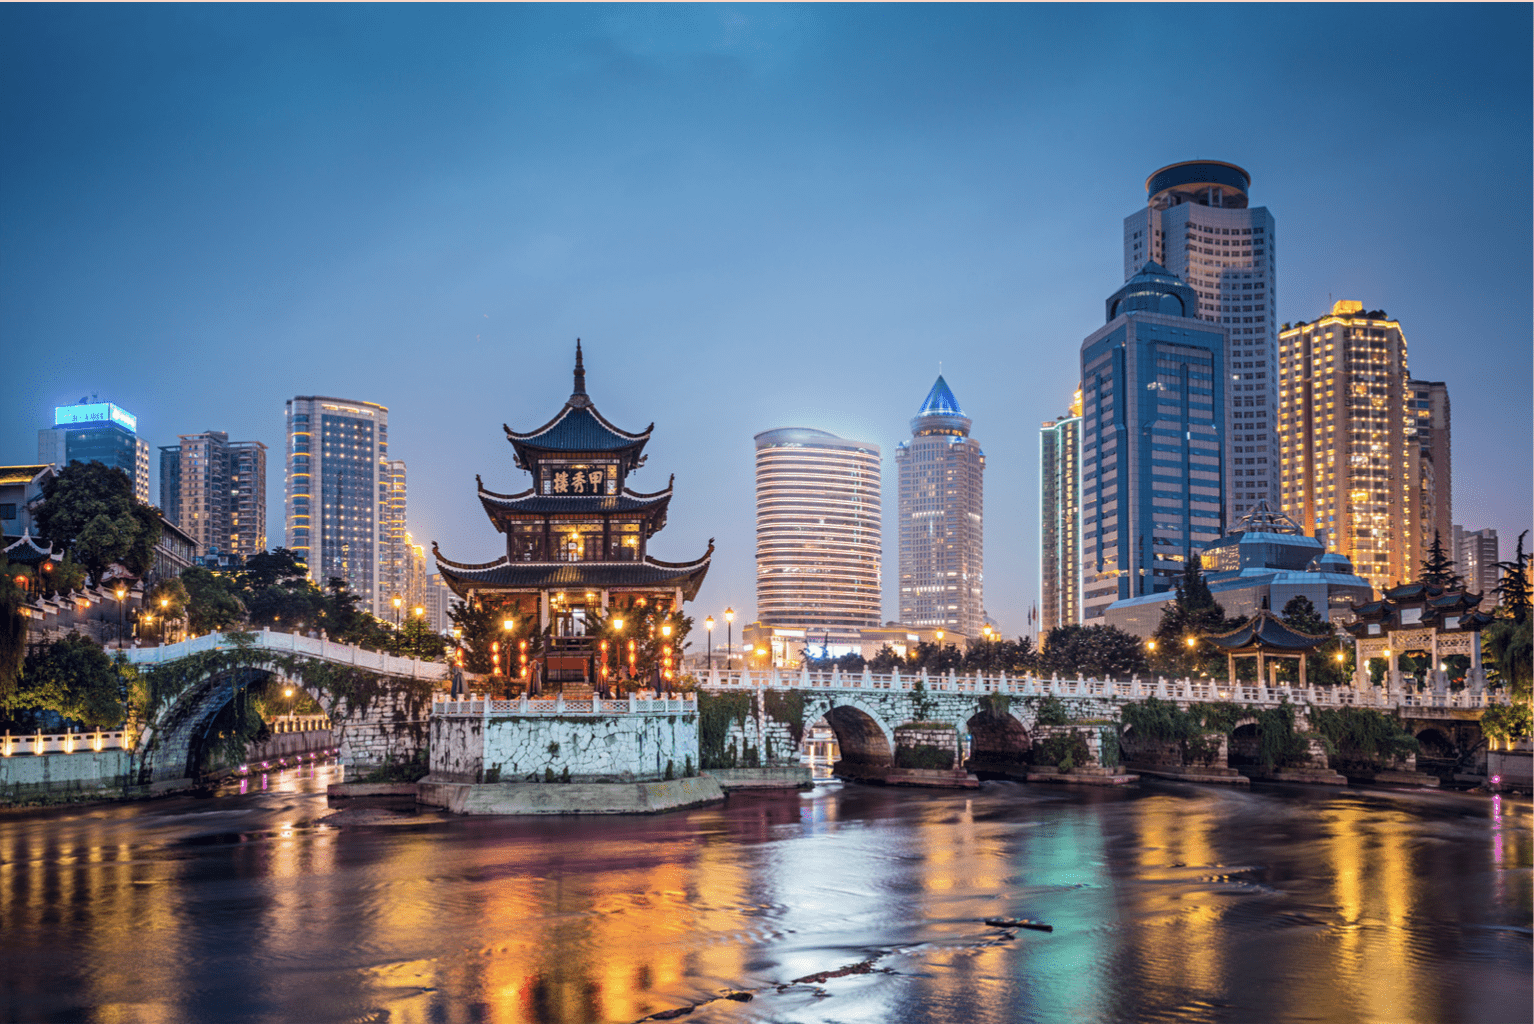 Webinaire de présentation du marché de l’architecture en Chine ! 🇨🇳